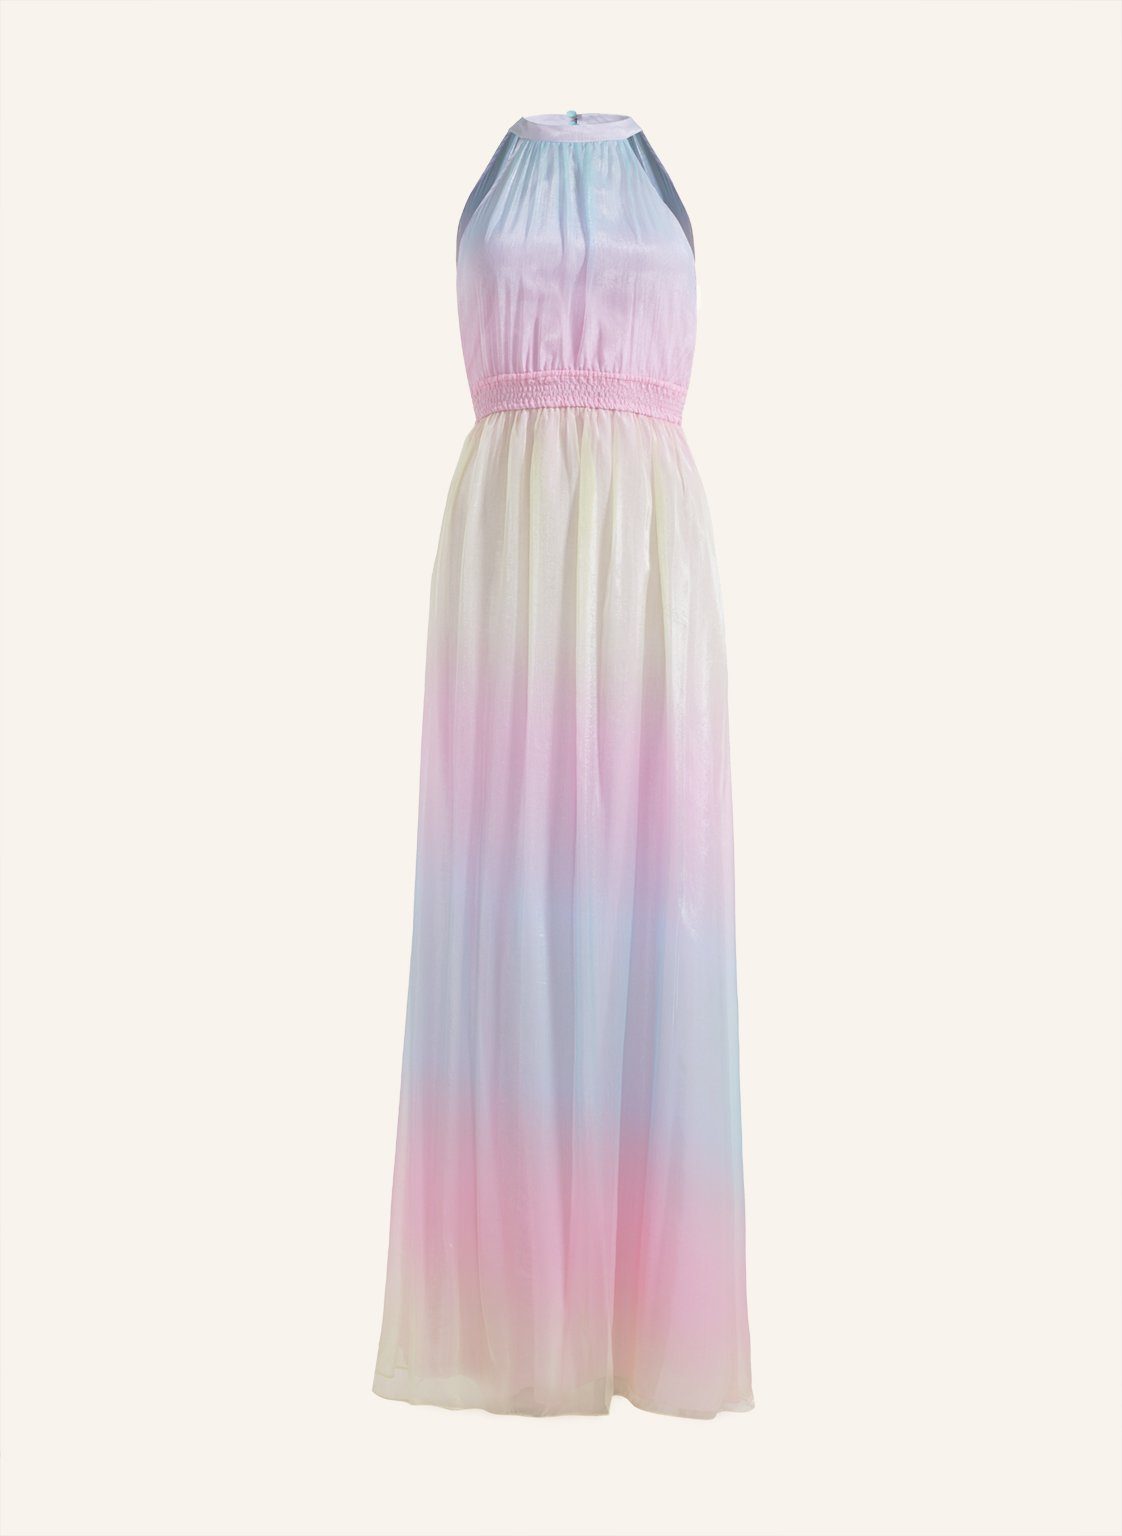 PRISMA DRESS Unique Abendkleid